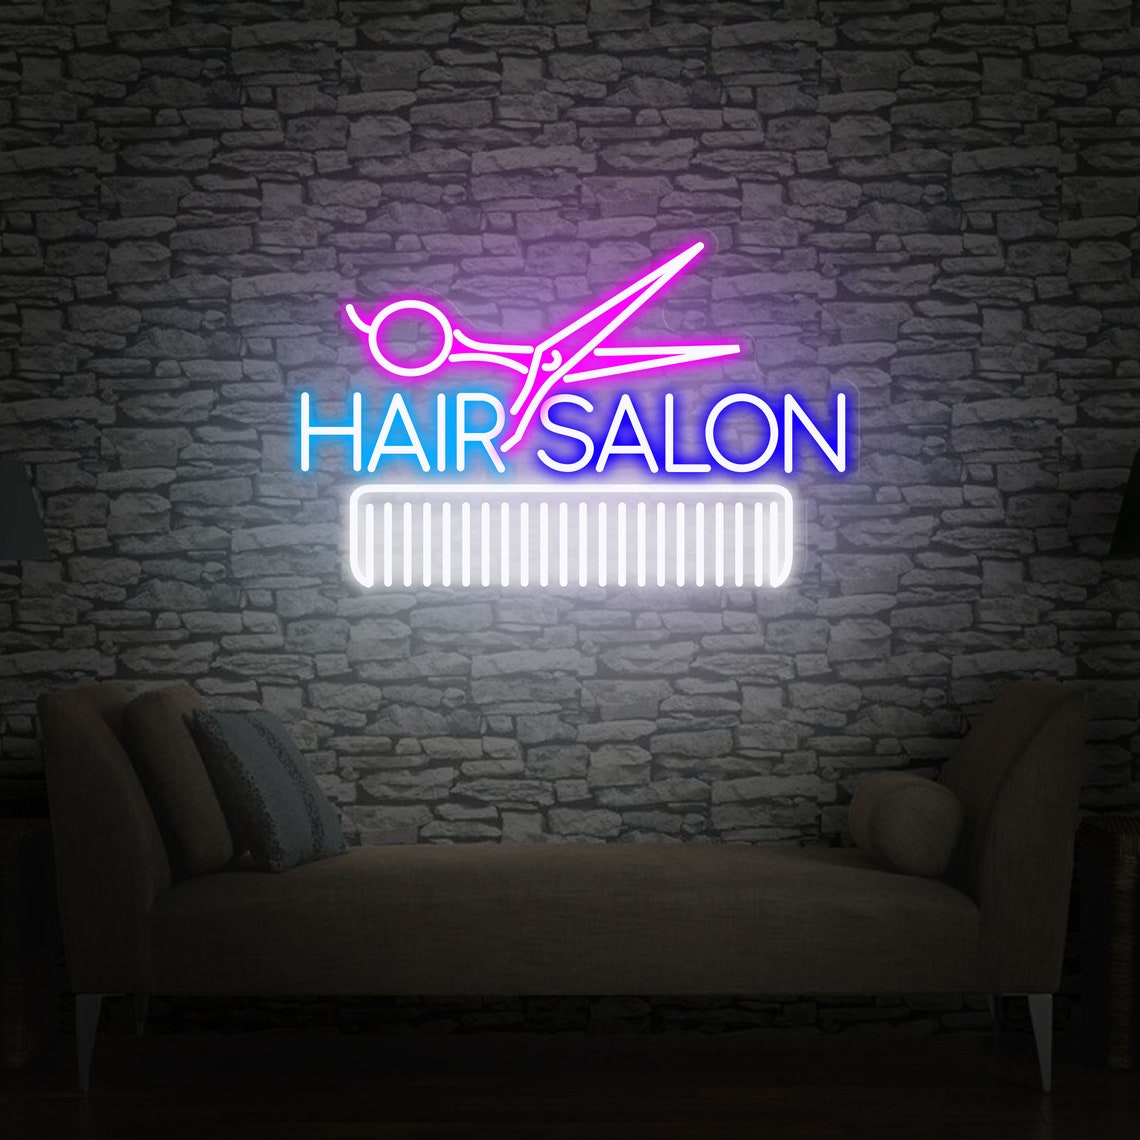 Custom Hair Salon Neon Sign Wall Decor Salon Office Decor - Etsy